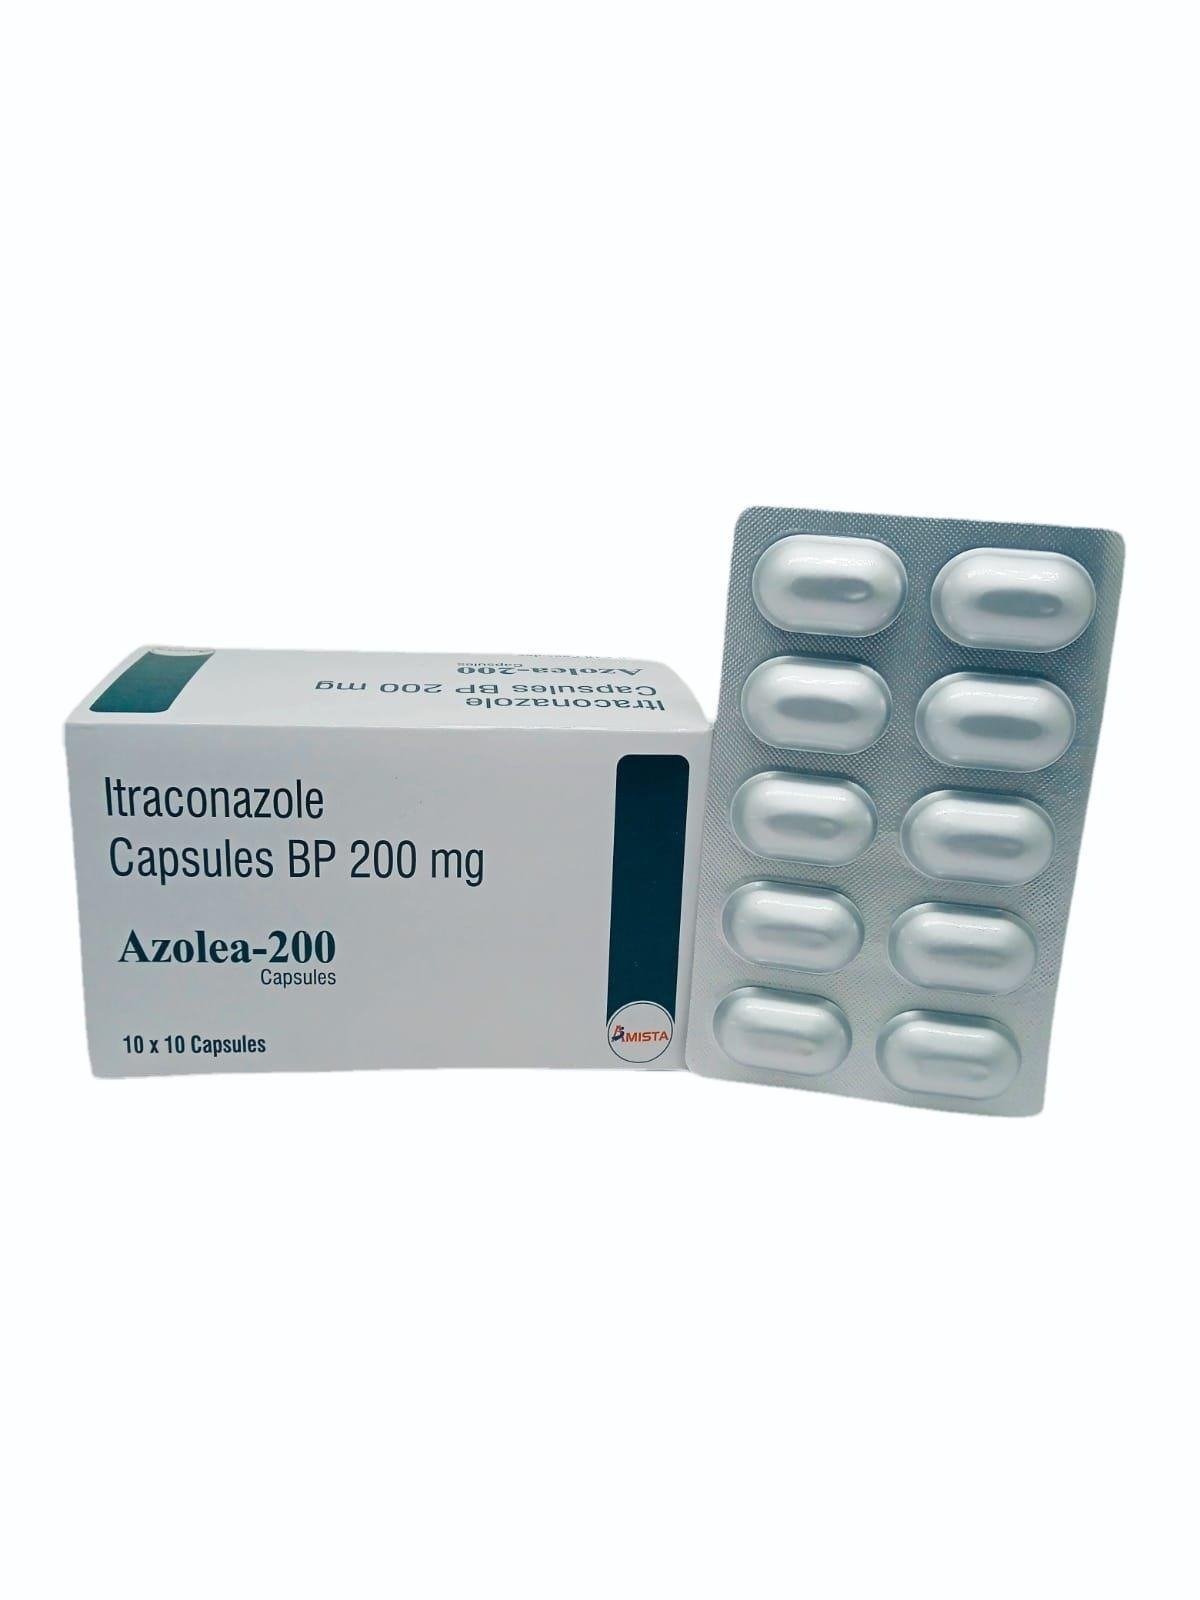 Azolea-200 Capsules